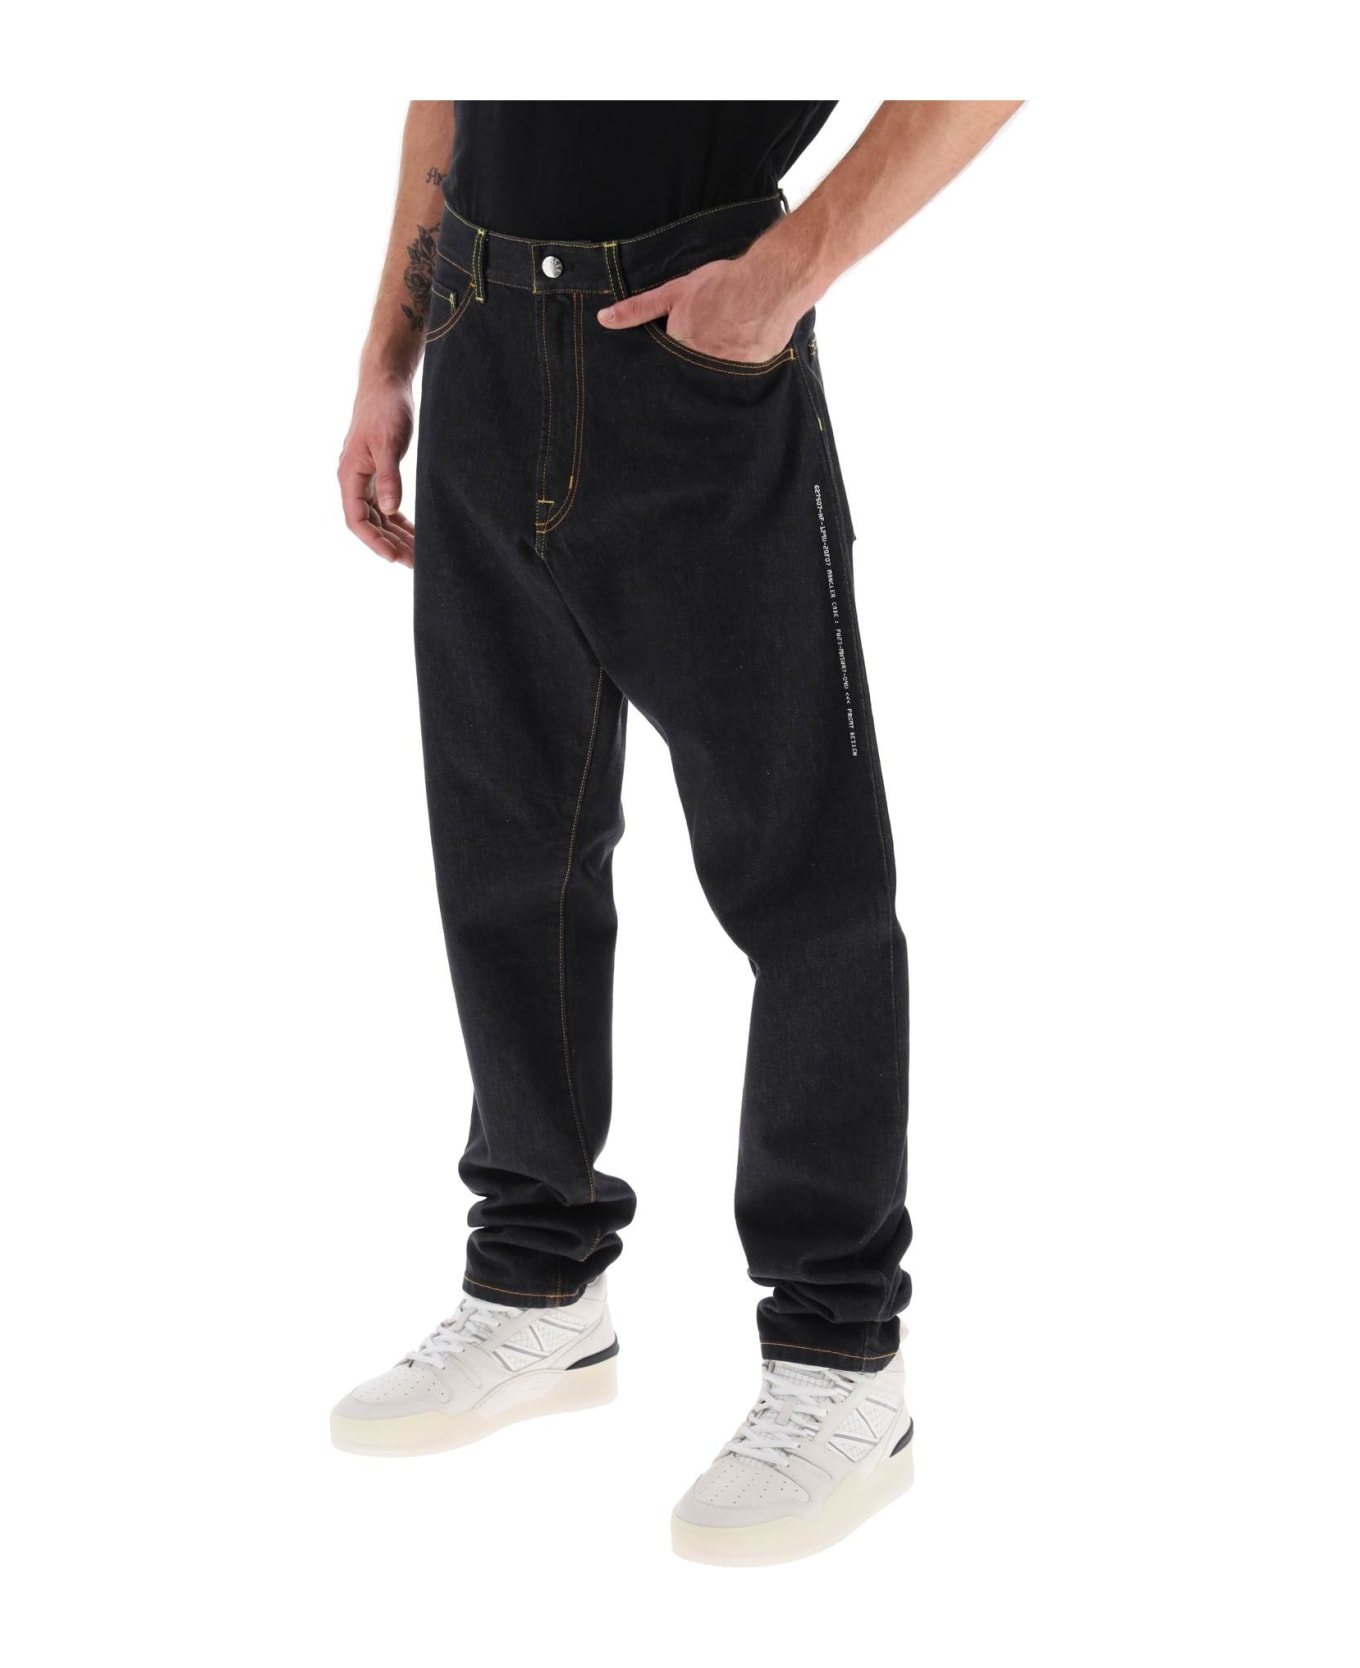 Moncler Genius Loose Fit Jeans - BLUE DEMIN (Black)